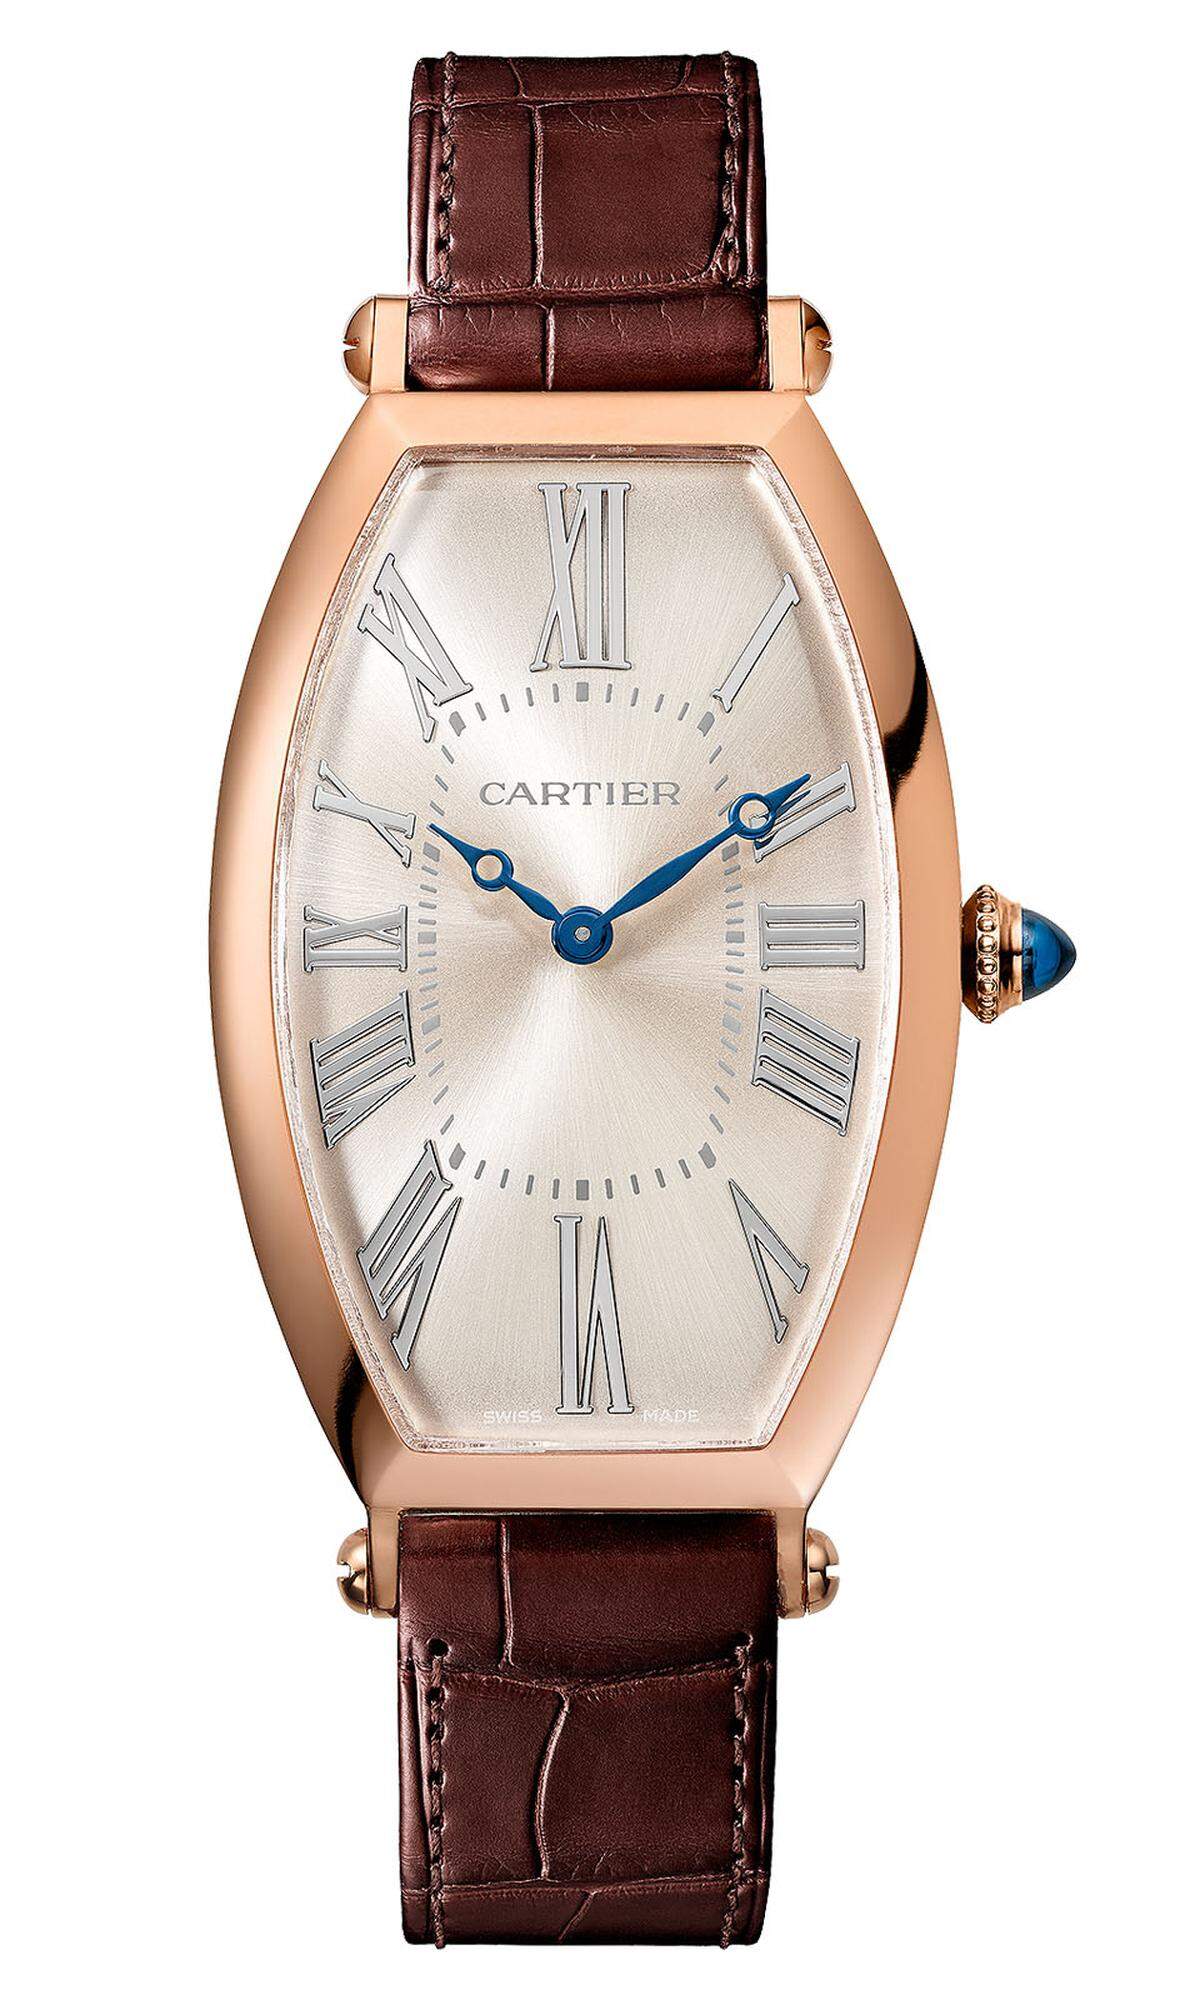 Cartier „Privé Tonneau". Cartier interpretiert eine seiner ältesten Armbanduhren neu – die „Tonneau"-Uhr aus dem Jahr 1906 mit der signifikanten Fass-Optik.